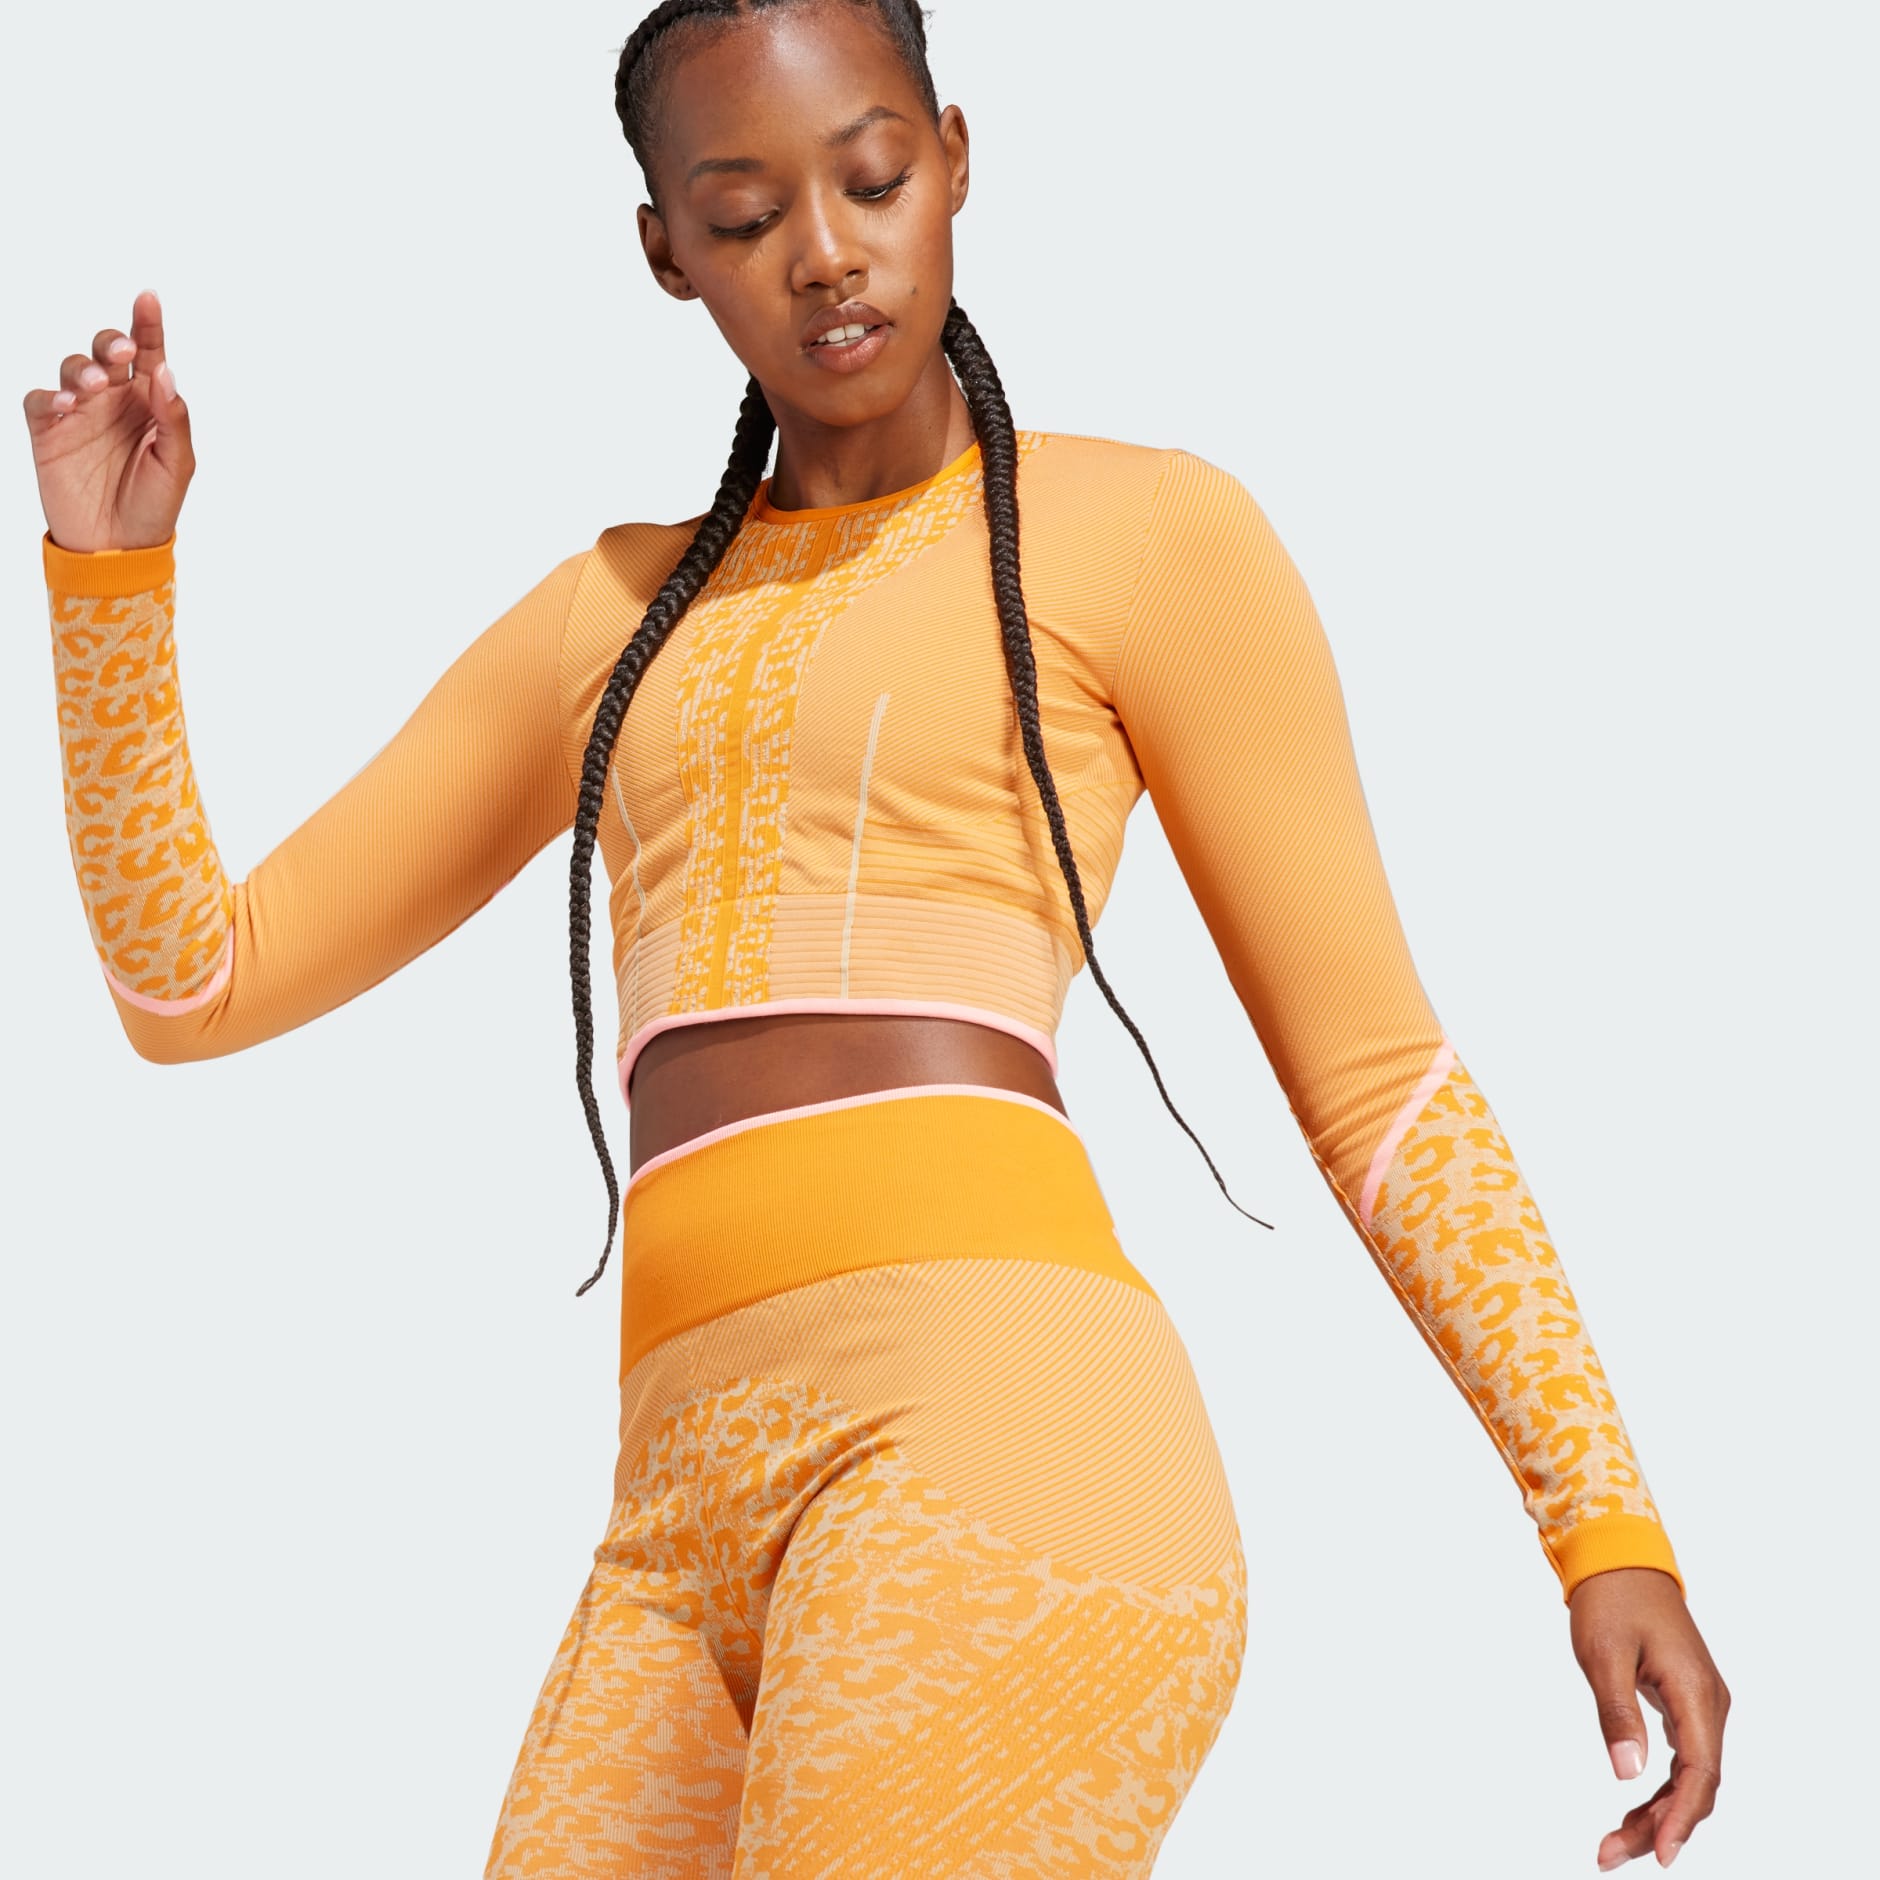 Adidas By Stella McCartney TrueStrength Seamless Yoga Top - Farfetch